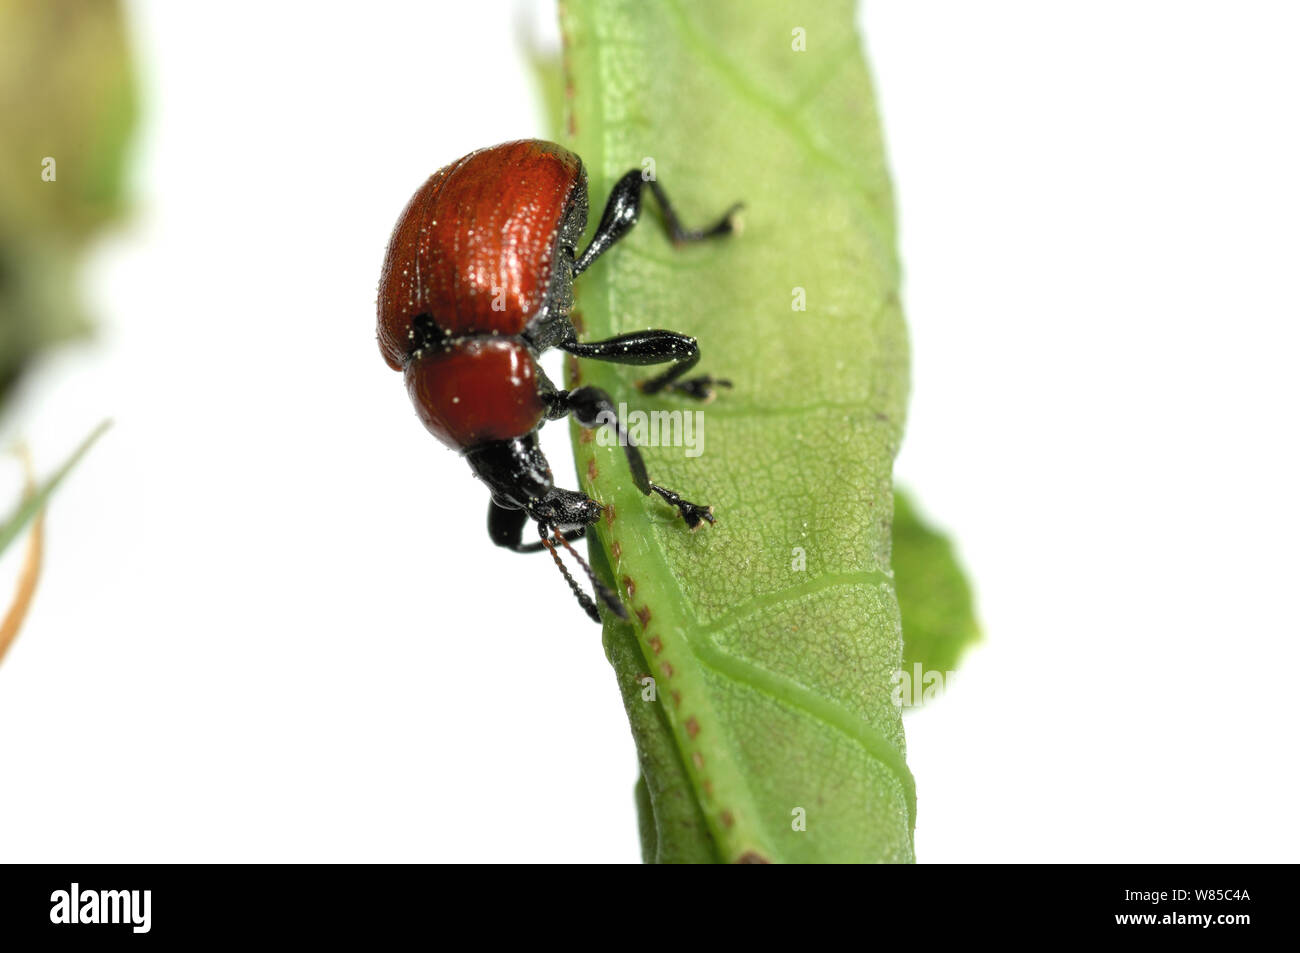 Oak Leaf Roller Beetle (Attelabus nitens) rolling leaf, Gohrde, Germany, May. (sequence 3/7) Stock Photo